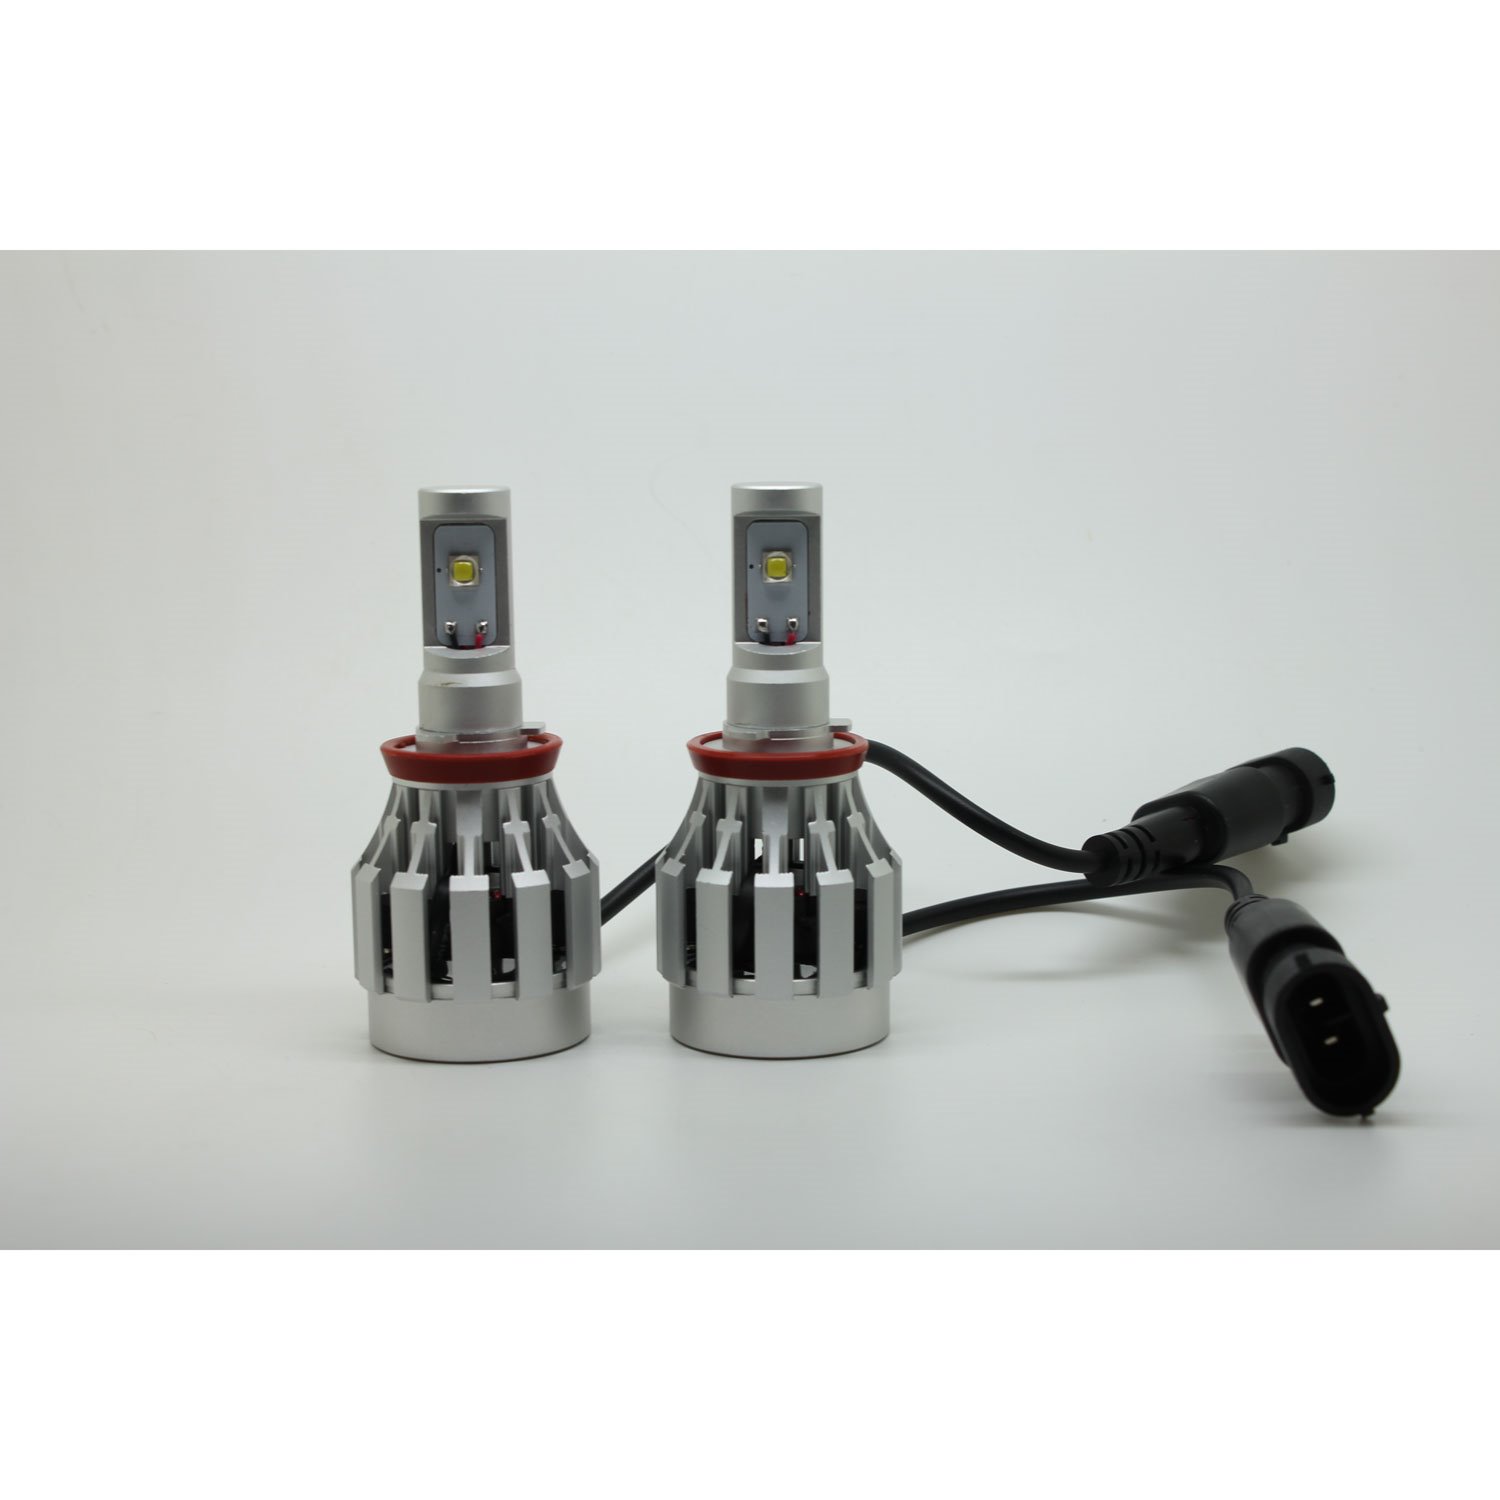 Cree XM-L2 LED Kit H8 Bulb Replacement